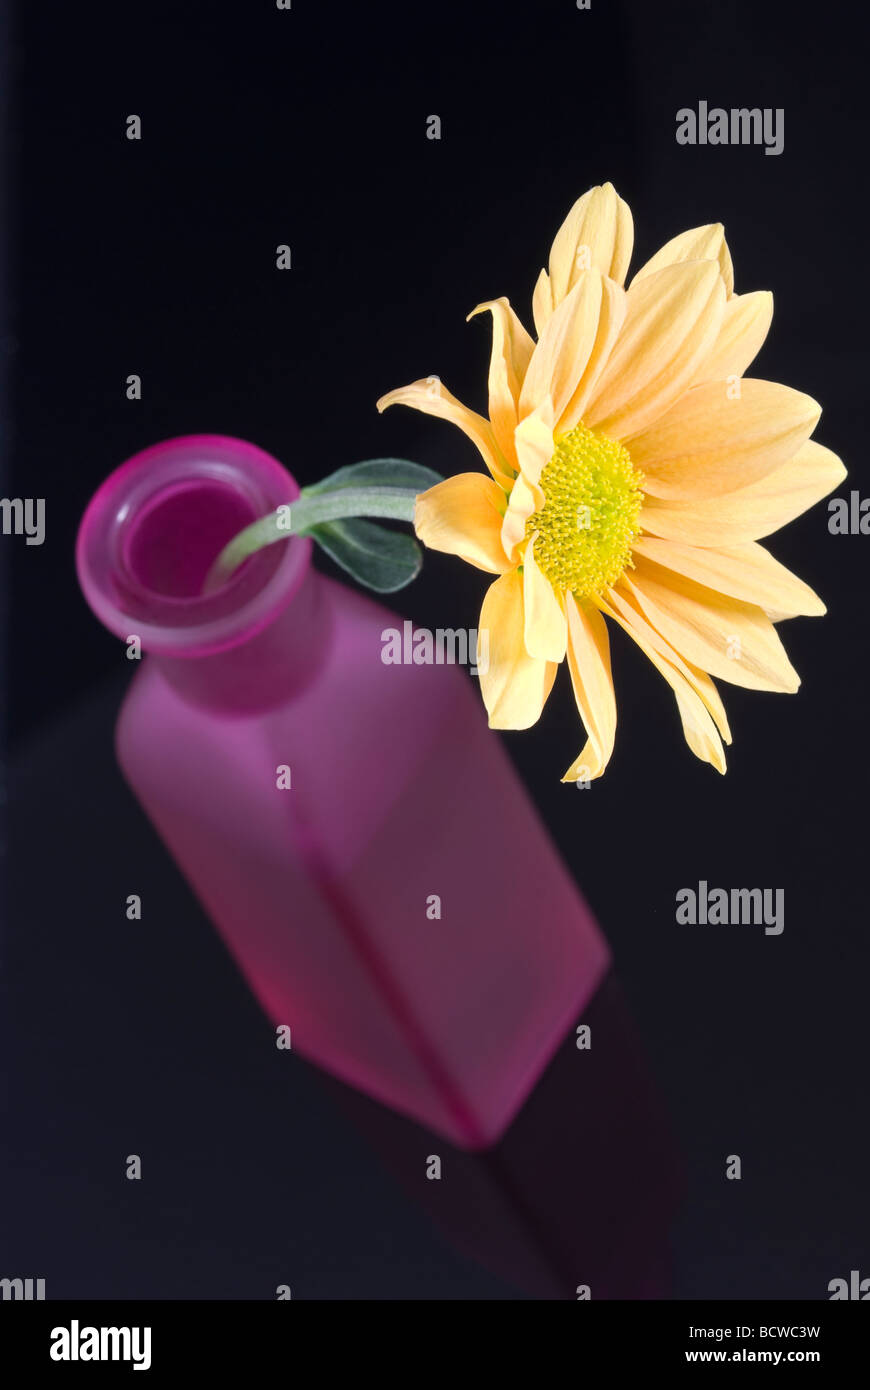 Yellow daisy flower arranged in purple bottle Stock Photo